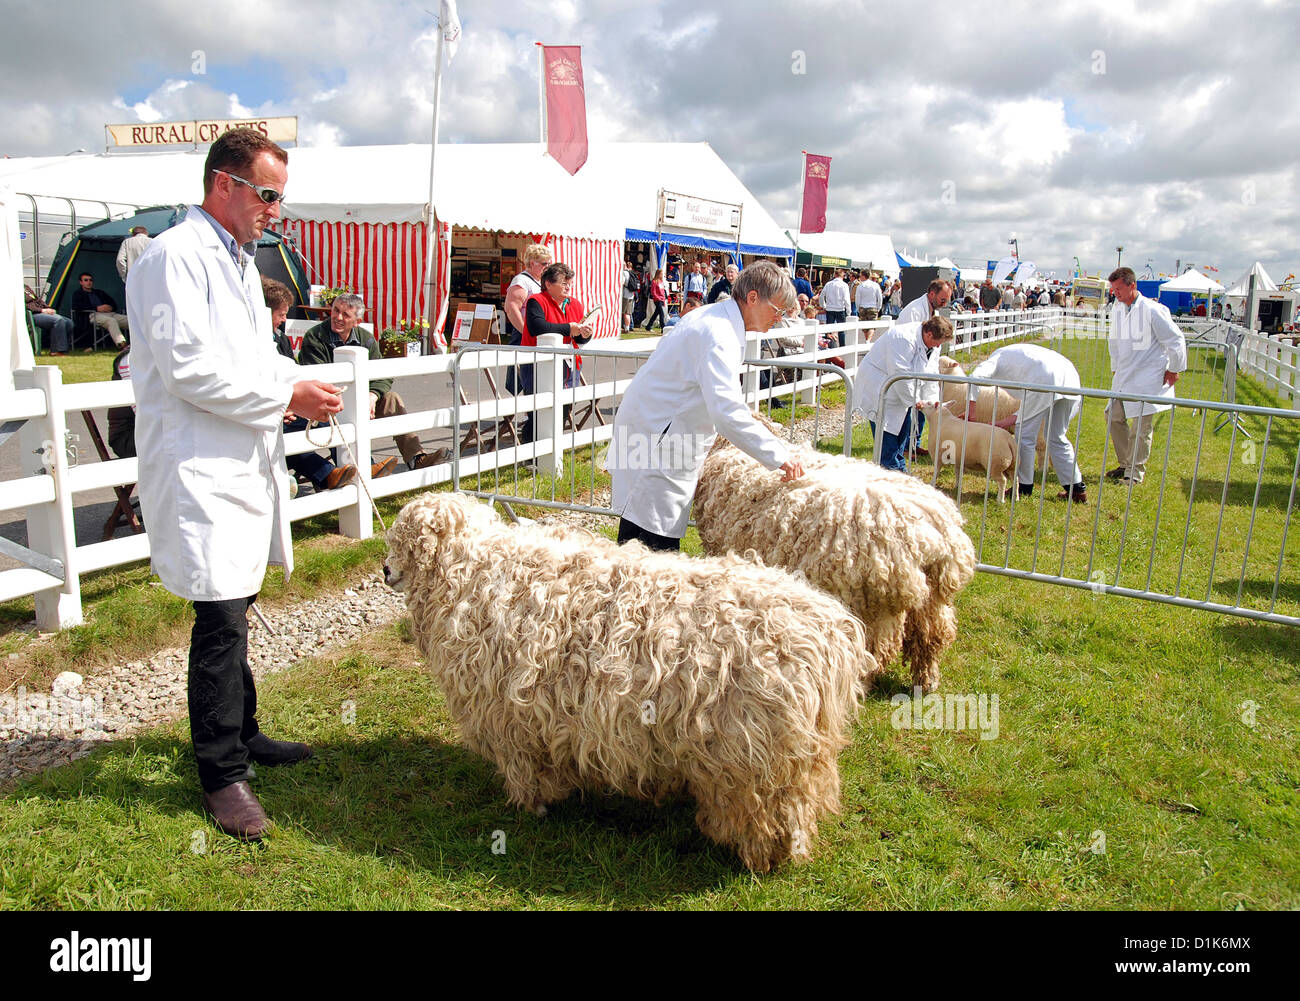 Moutons dans la plume de jugement au royal cornwall show, wadebridge, Cornwall, uk Banque D'Images